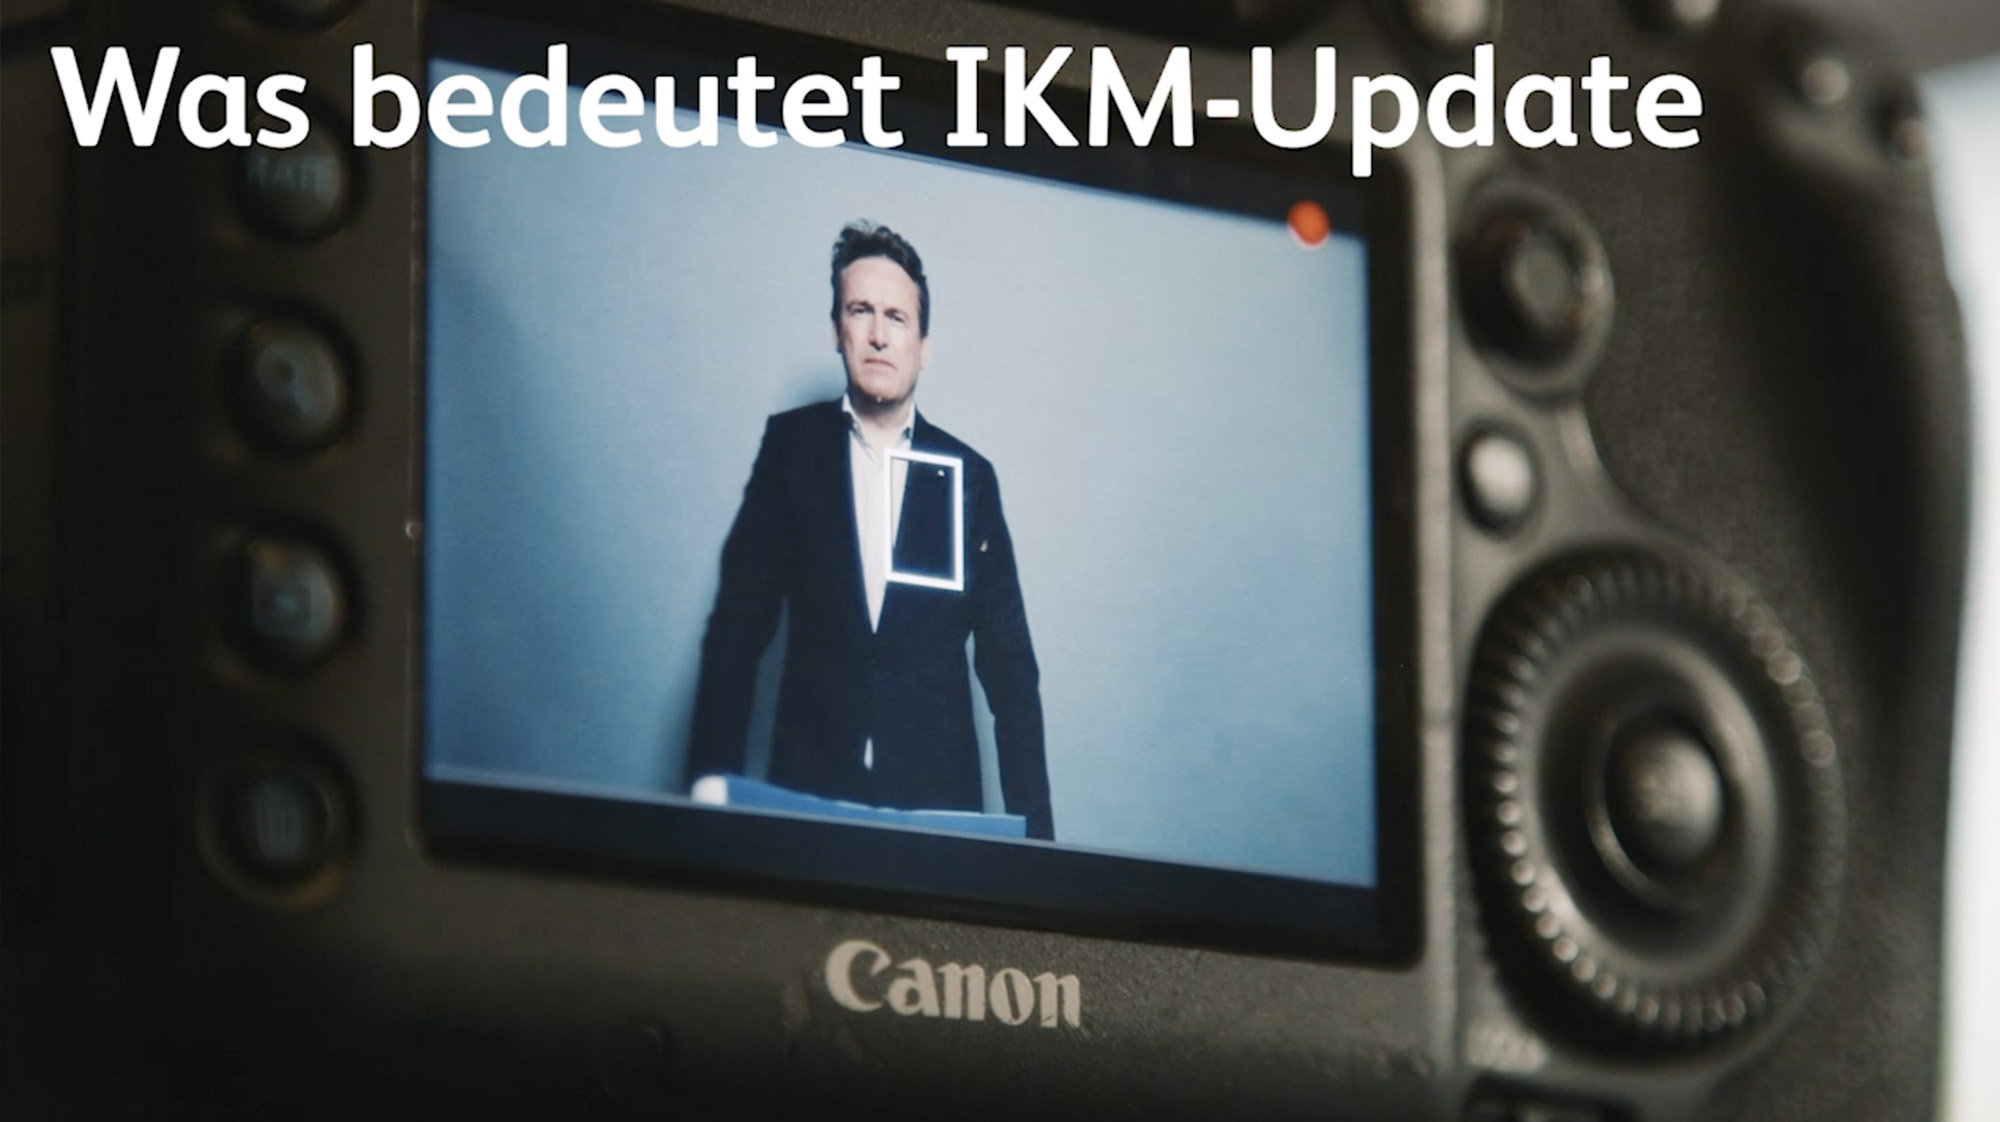 IKM Update Kamera